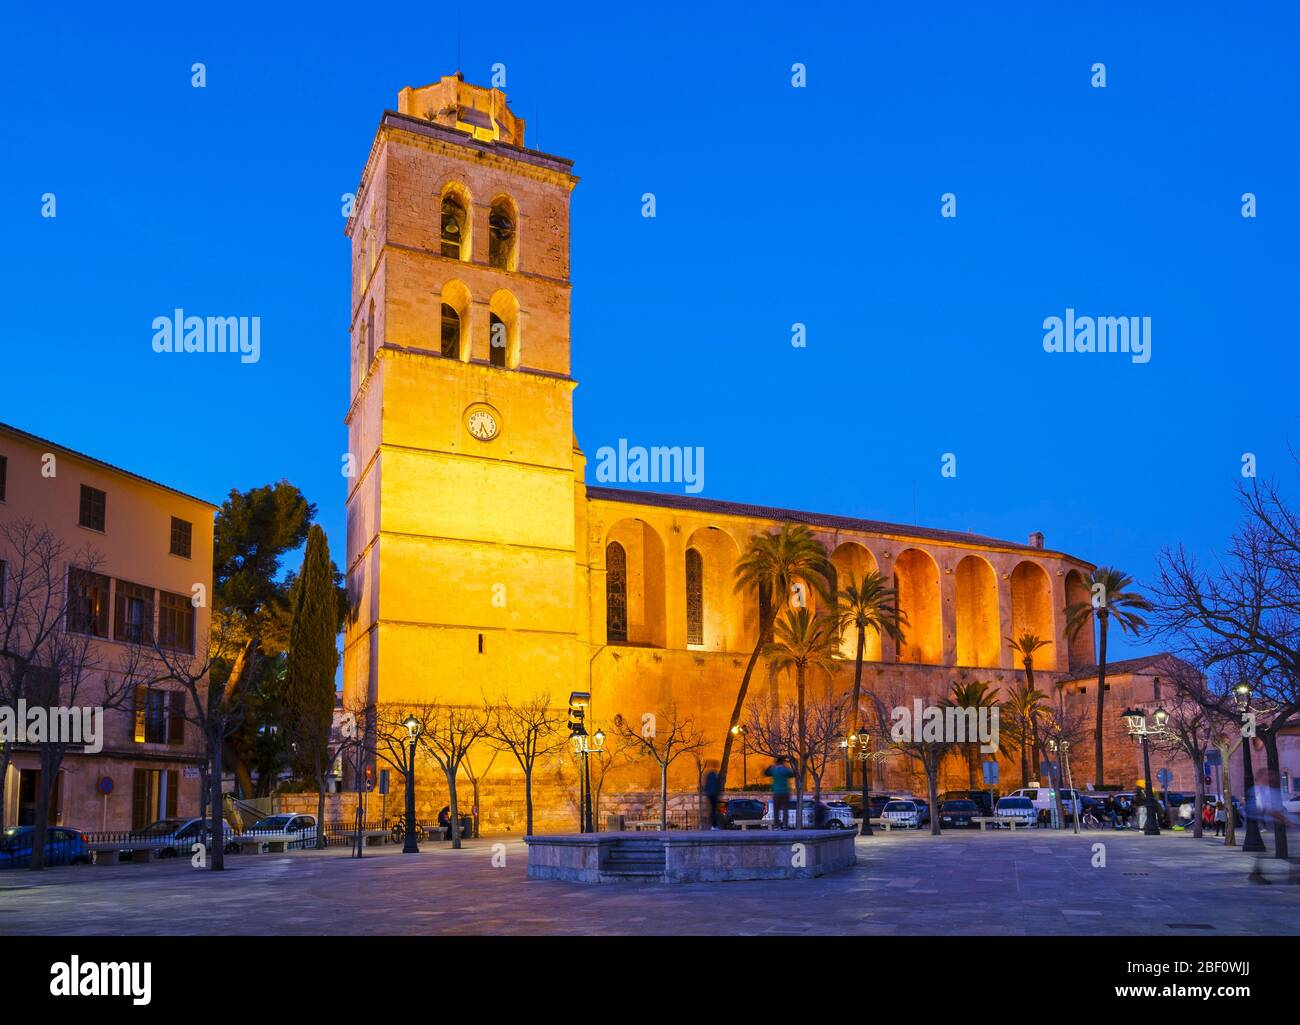 Parish church of Sant Joan at dusk, Muro, Es Pla region, Majorca, Balearic Islands, Spain Stock Photo